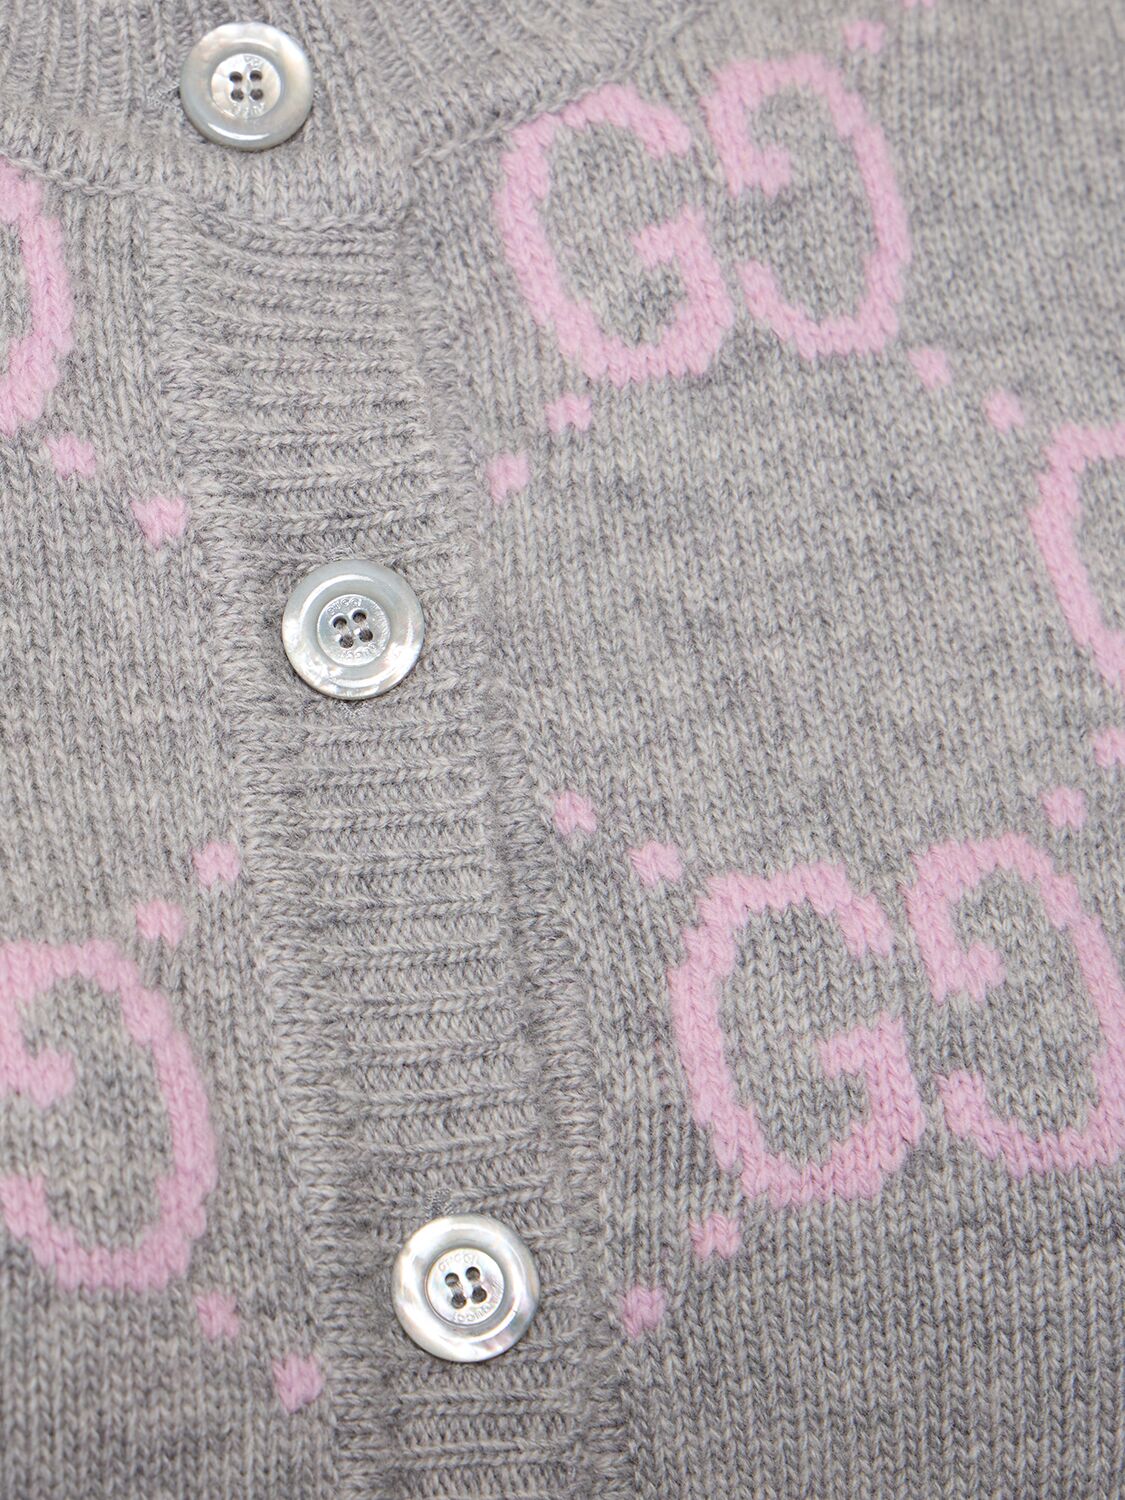 Shop Gucci Gg Knit Wool Cardigan In Light Grey